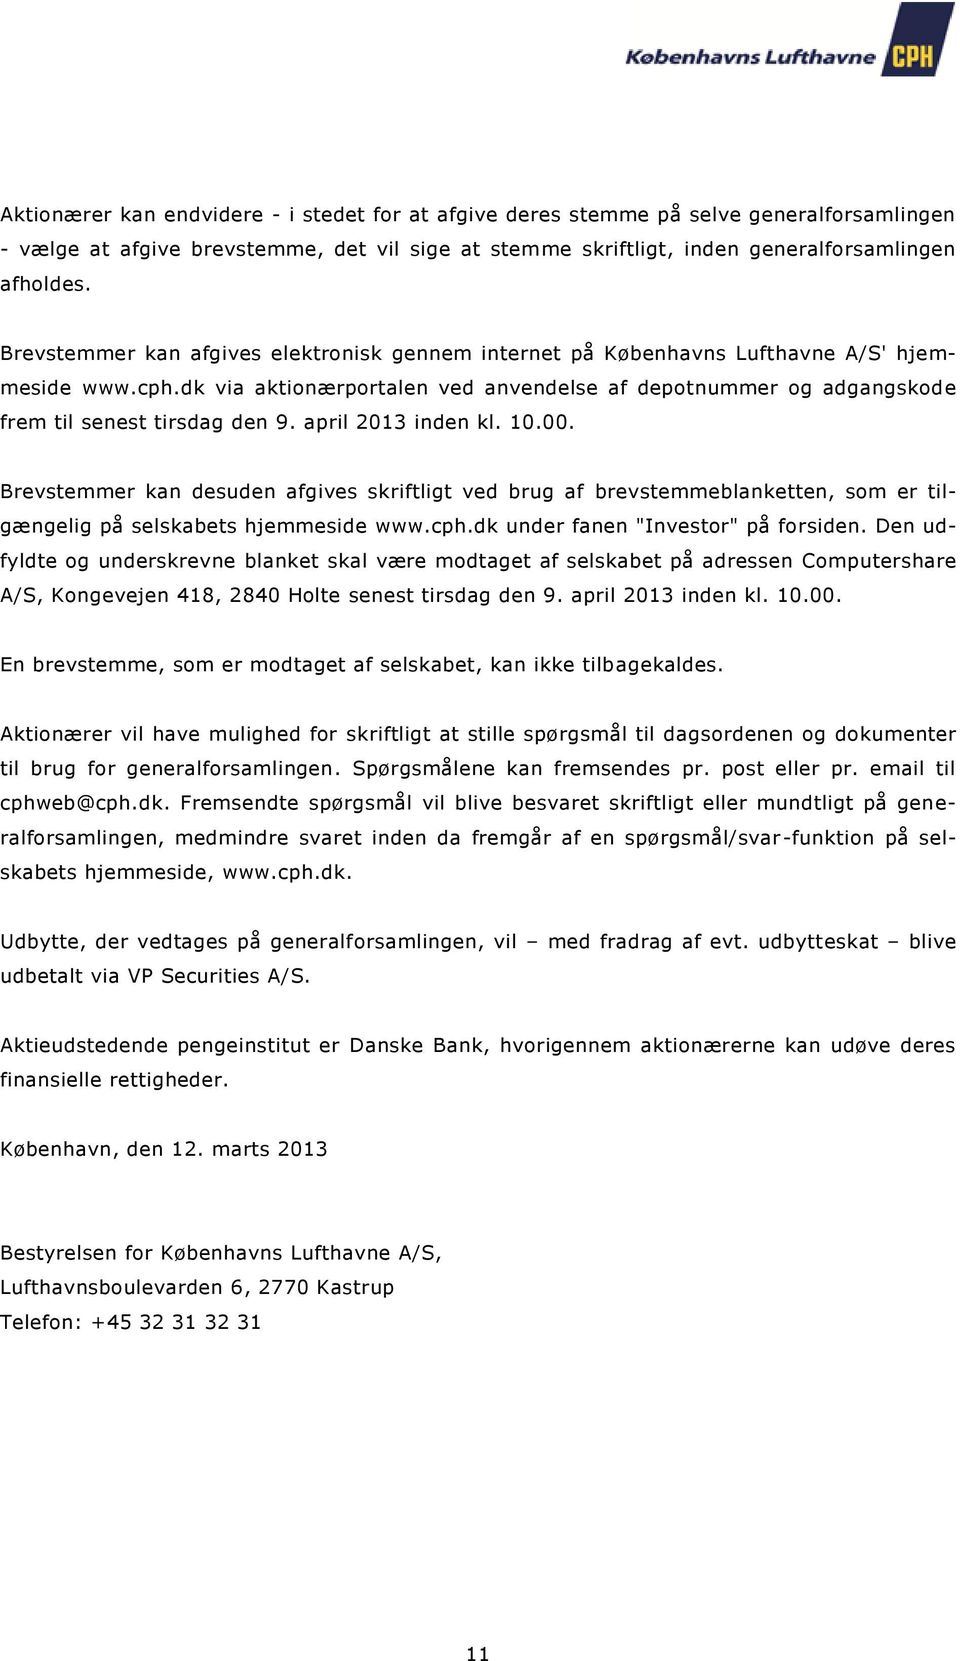 april 2013 inden kl. 10.00. Brevstemmer kan desuden afgives skriftligt ved brug af brevstemmeblanketten, som er tilgængelig på selskabets hjemmeside www.cph.dk under fanen "Investor" på forsiden.